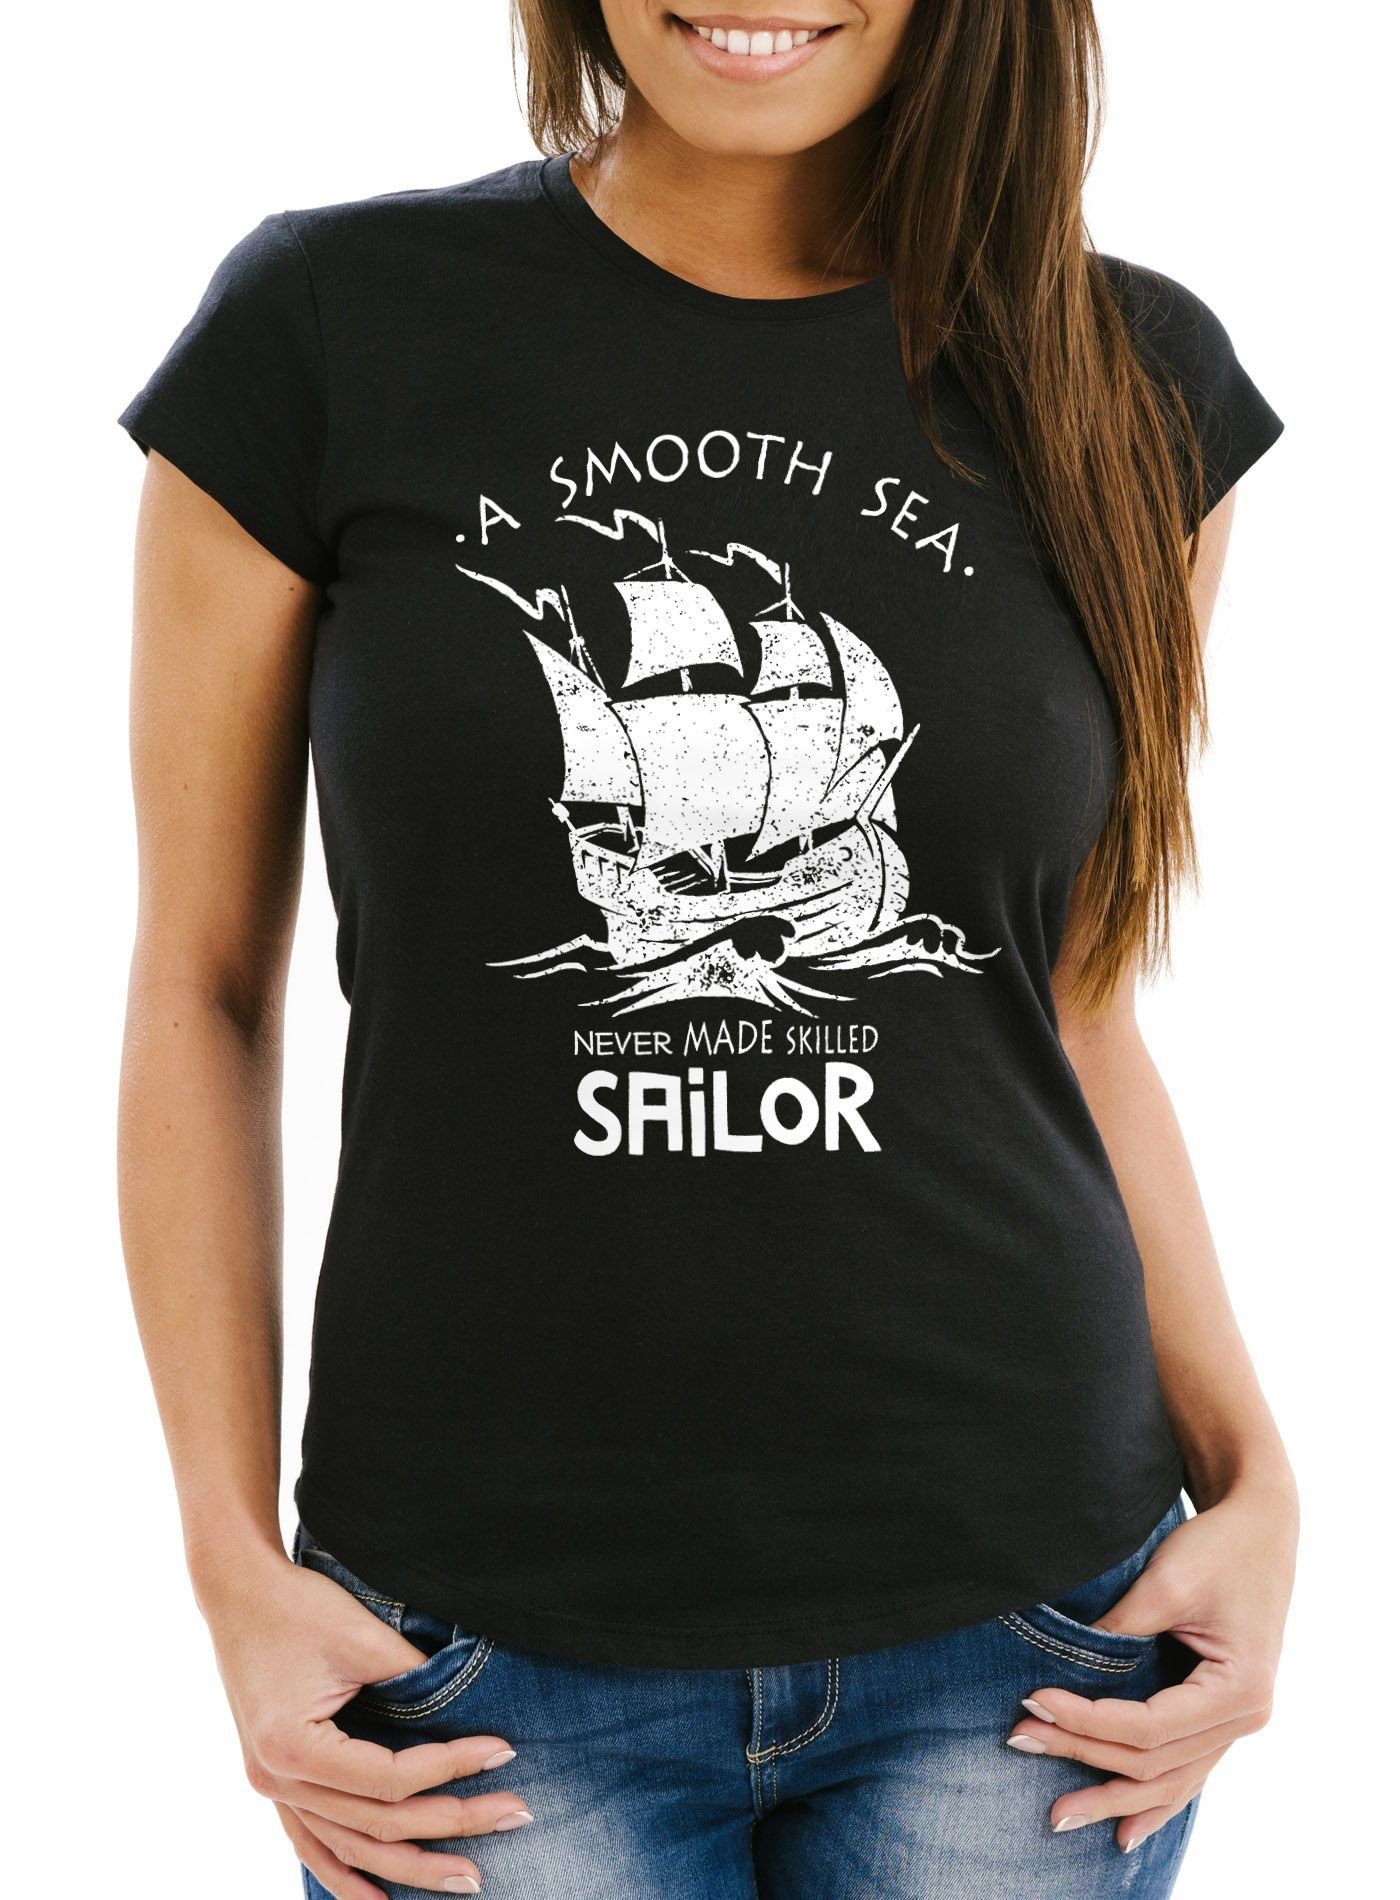 Neverless Print-Shirt Damen T-Shirt A smooth sea never made skilled Sailor Schiff Sailing Neverless® mit Print